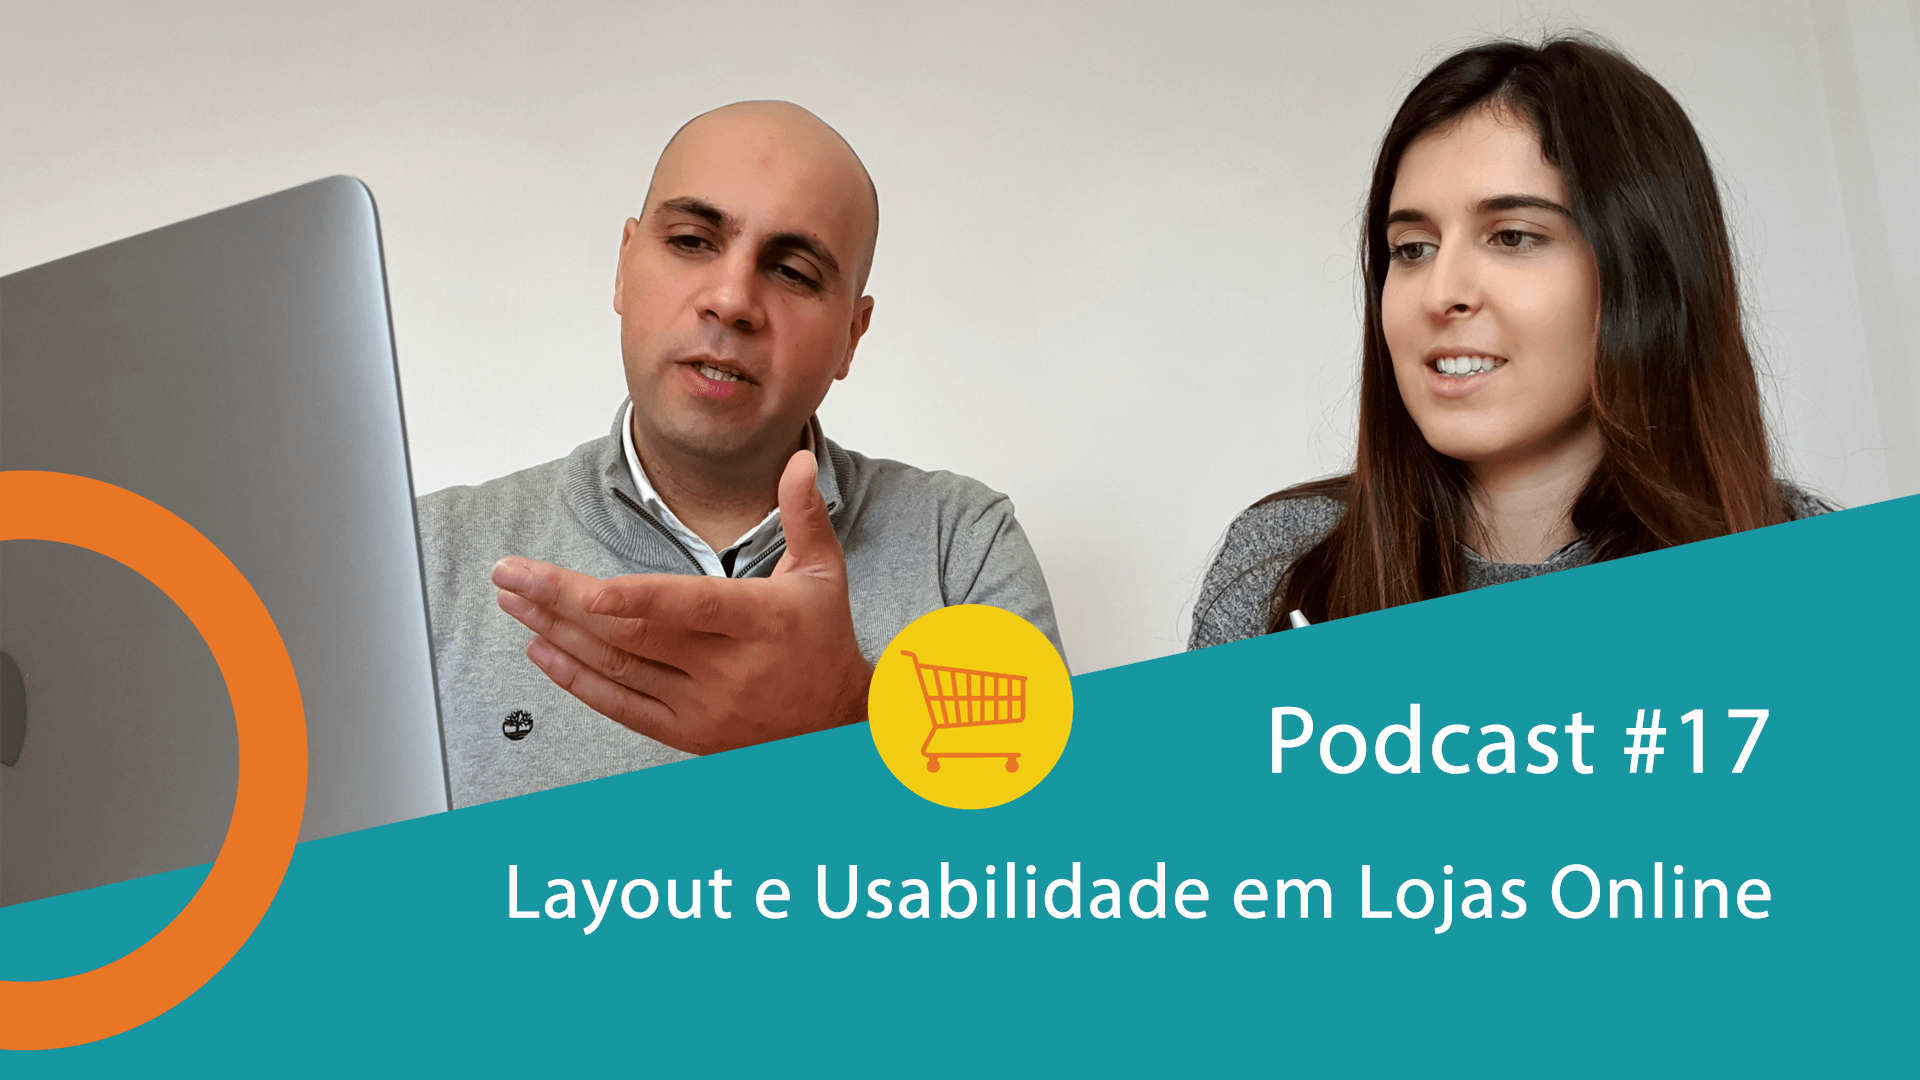 Podcast #17 - Layout e Usabilidade em Lojas Online